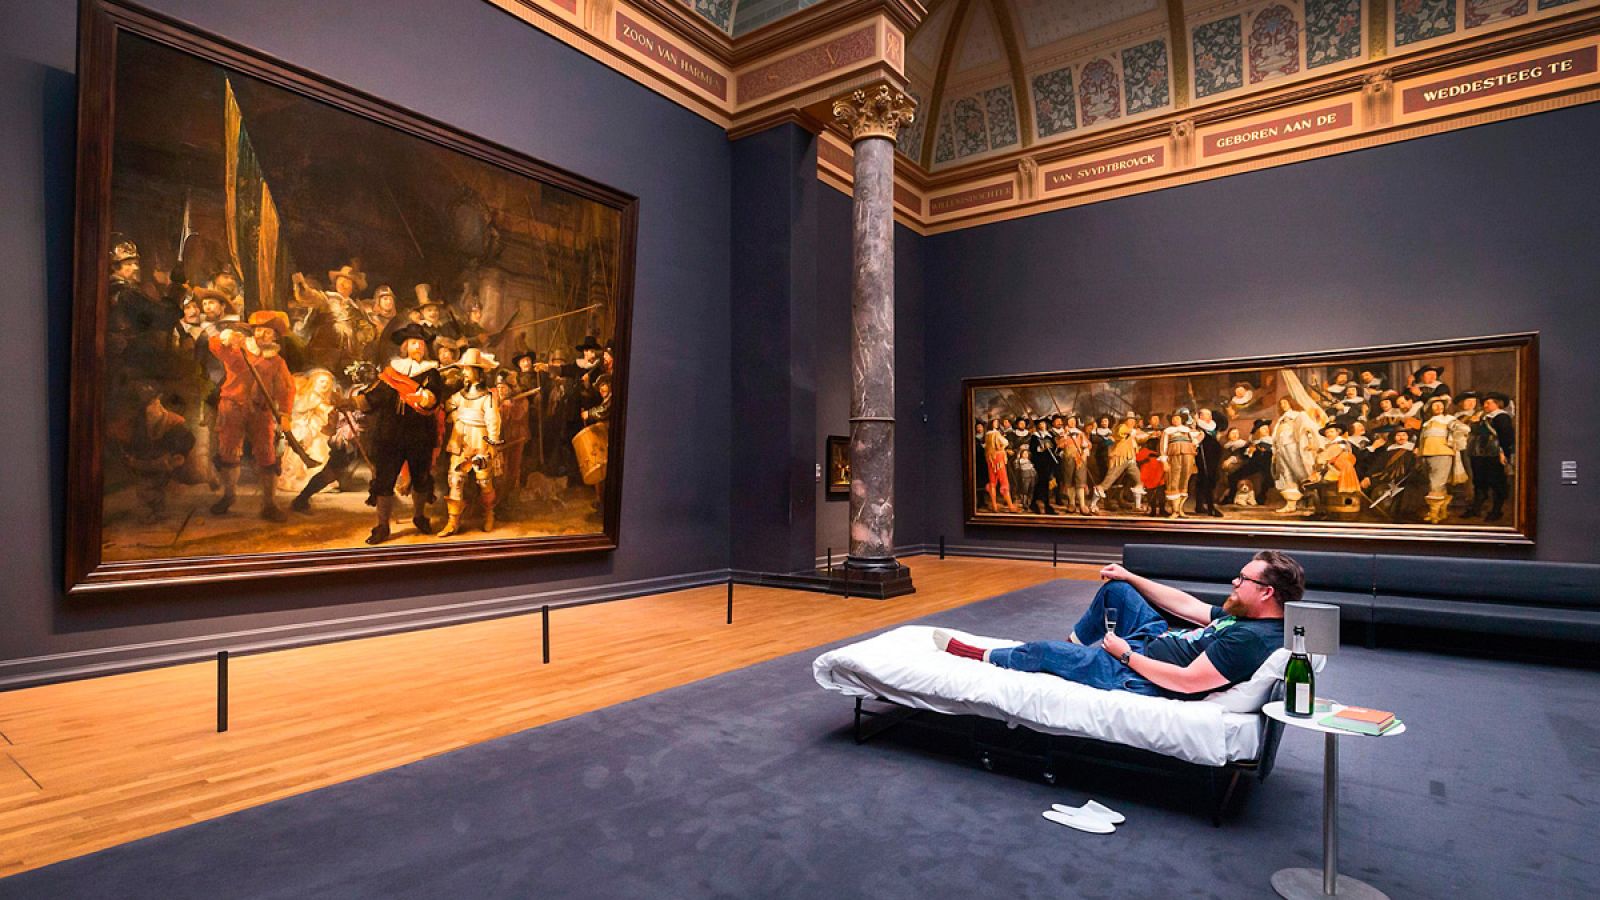 Stefan Kasper tumbado en una cama en el Rijksmuseum de Amsterdam